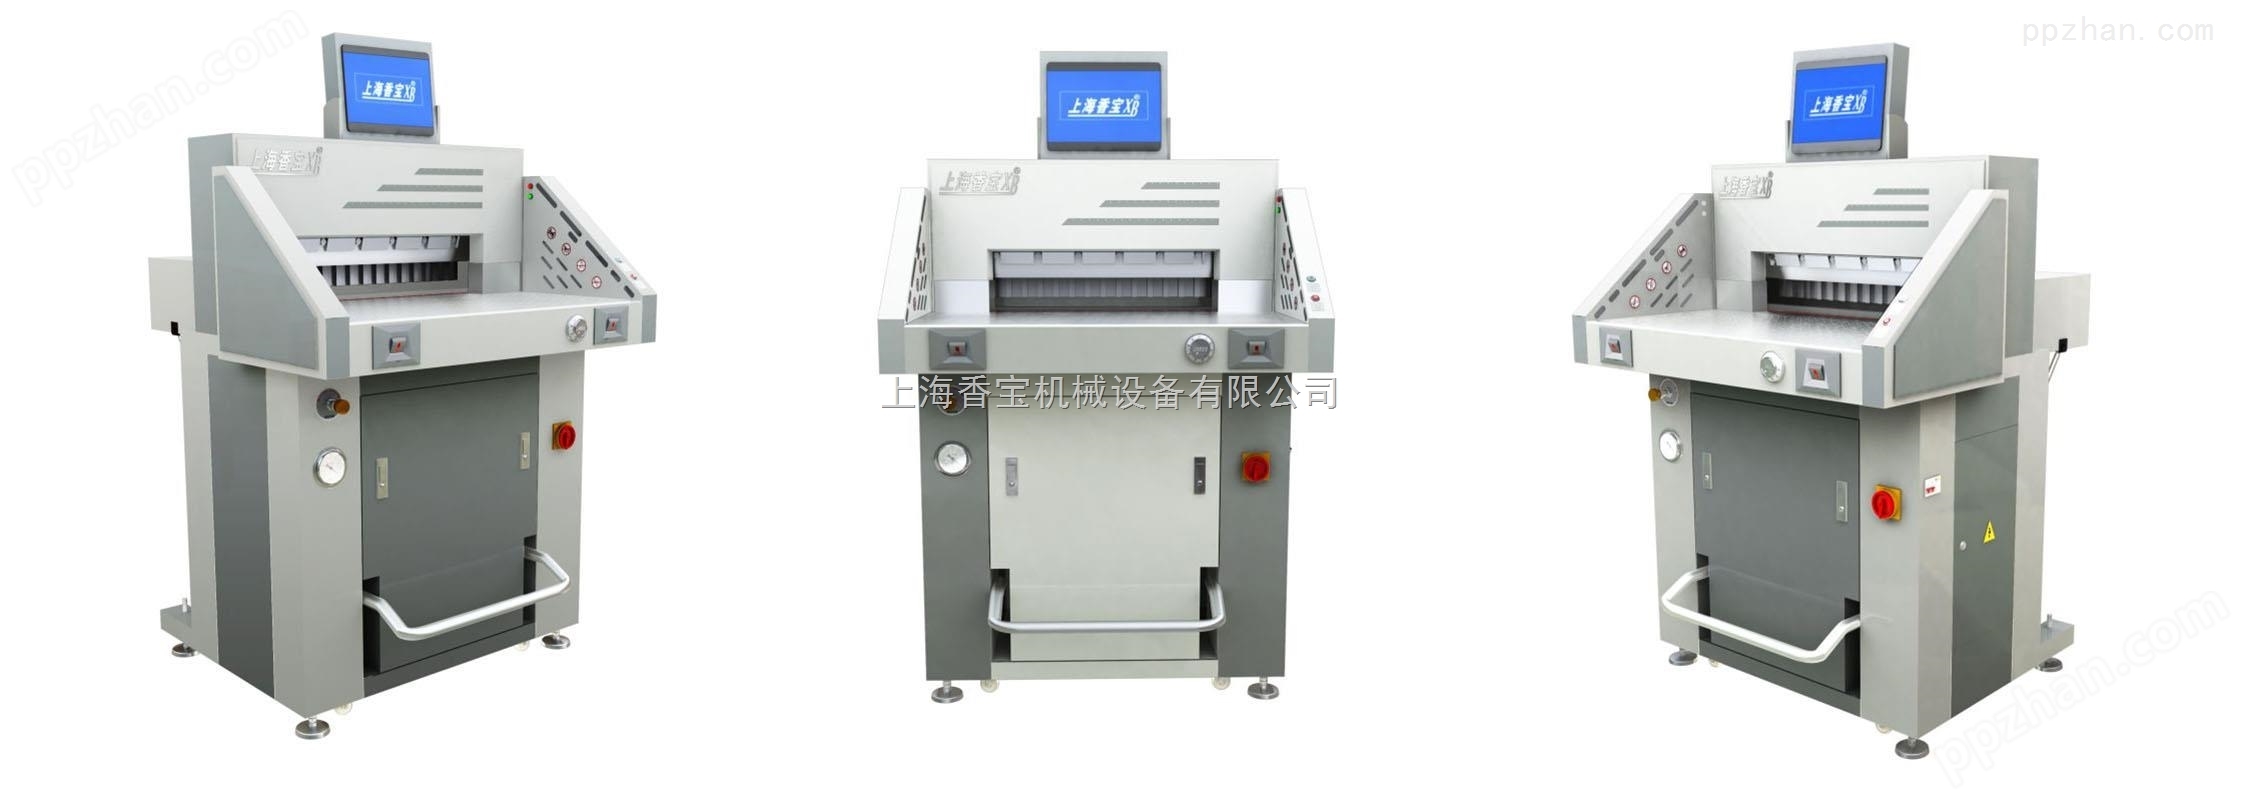 上海香宝新款XB-AT551-08液压裁纸机